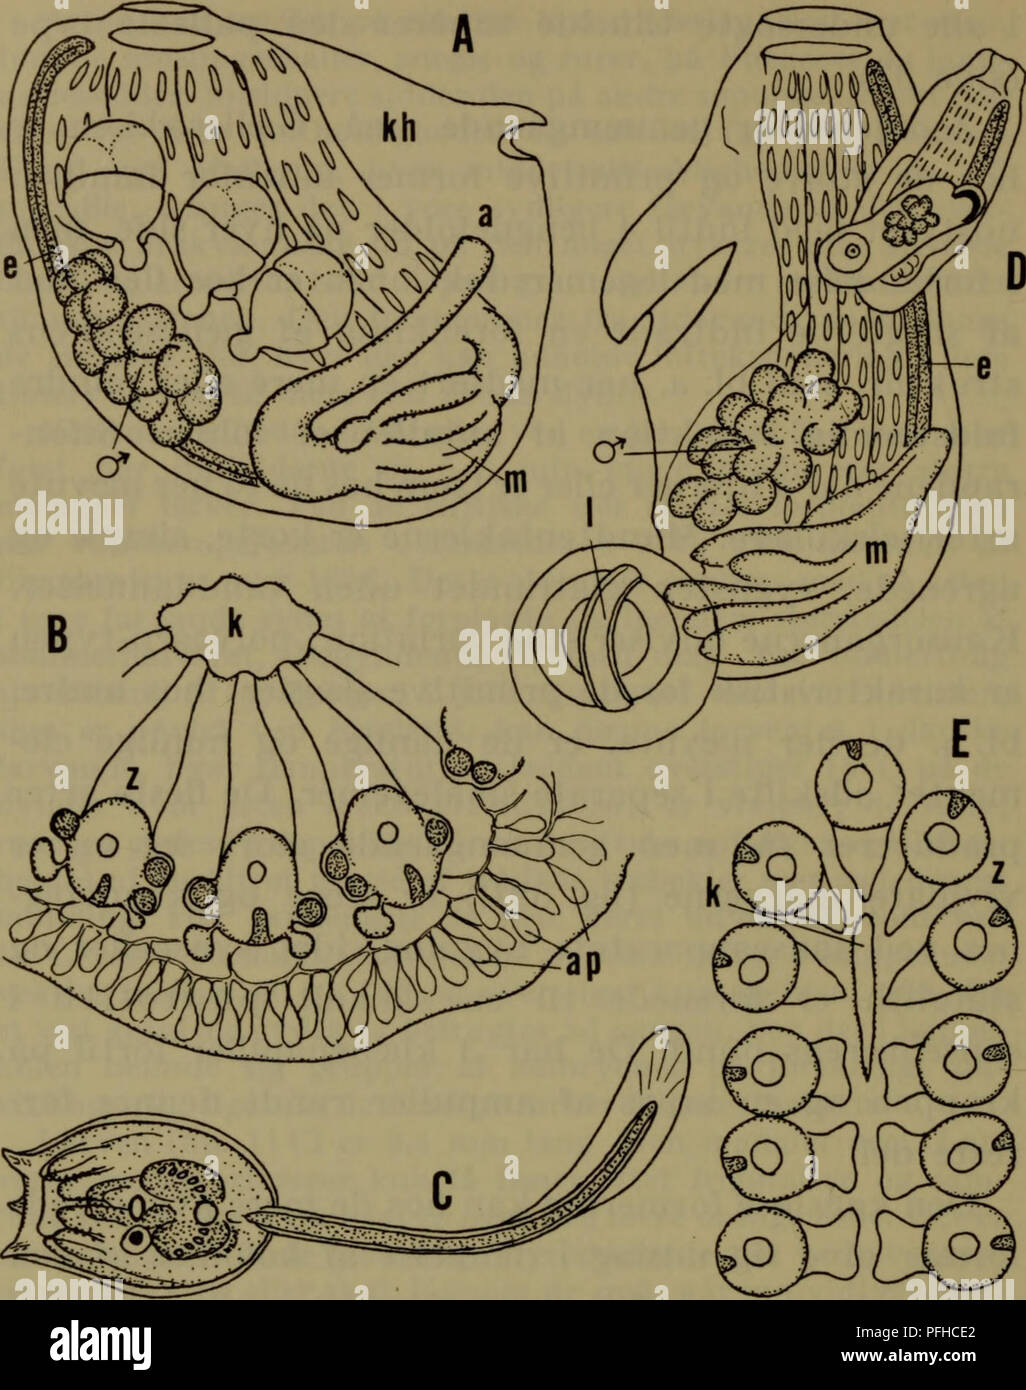 . Danmarks fauna; illustrerede haandbøger over den danske dyreverden... 142. Fig. 59. Polyzoidae. A-C Botryllus schlosseri, zooid med 3 em- bryoner, koloniorganisation og larve, D og E Botrylloides leachi, zooid med næsten funktionsdygtigt blastozooid og koloniorganisa- tion, a anus, ap ampuller, e endostyl, k kloakhuleåbning, kh kappe- hule, 1 larve i rugesæk, m mave, z zooid. epithel, eller en blære bestående af de samme lag, som afsnøres fra moderindividet (fig. 12 E). Familien er ved en jævn overgang forbundet med styeliderne, hvorfra den utvivlsomt har udspaltet sig,. Please note that the Stock Photo